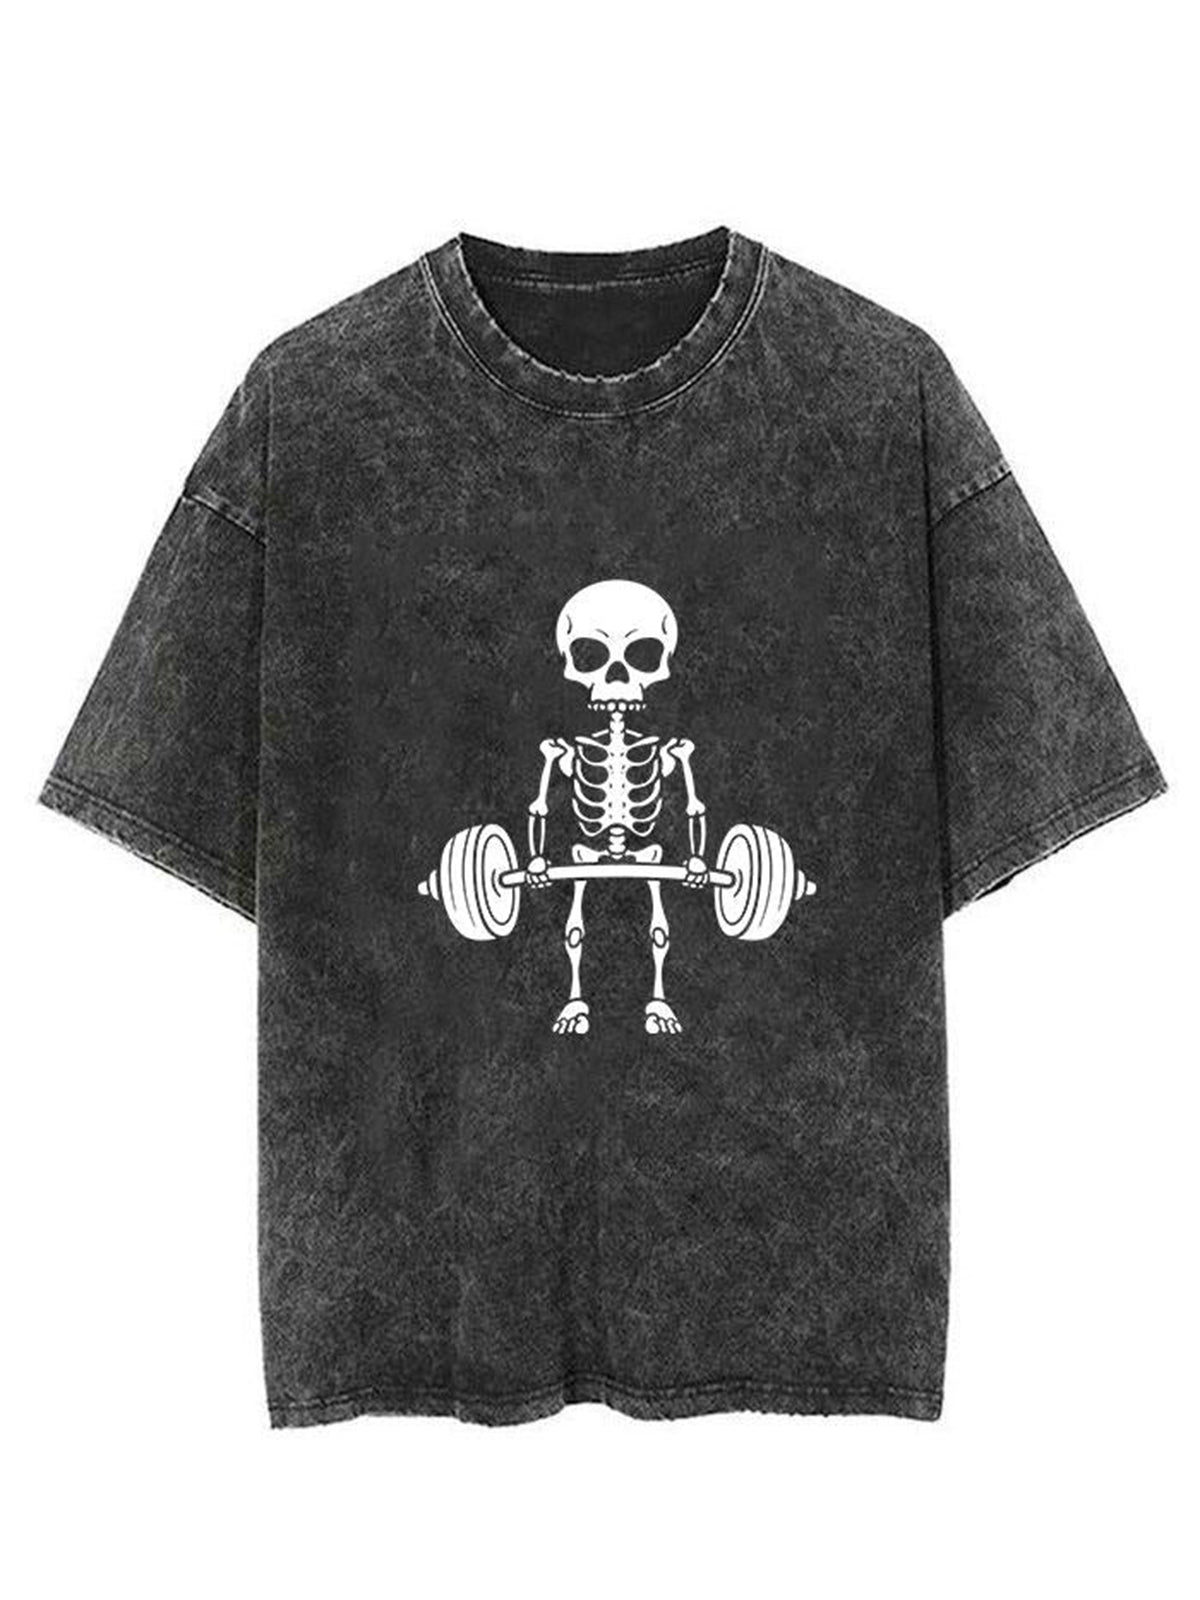 Fitness Skull Unisex Short Sleeve Washed T-Shirt